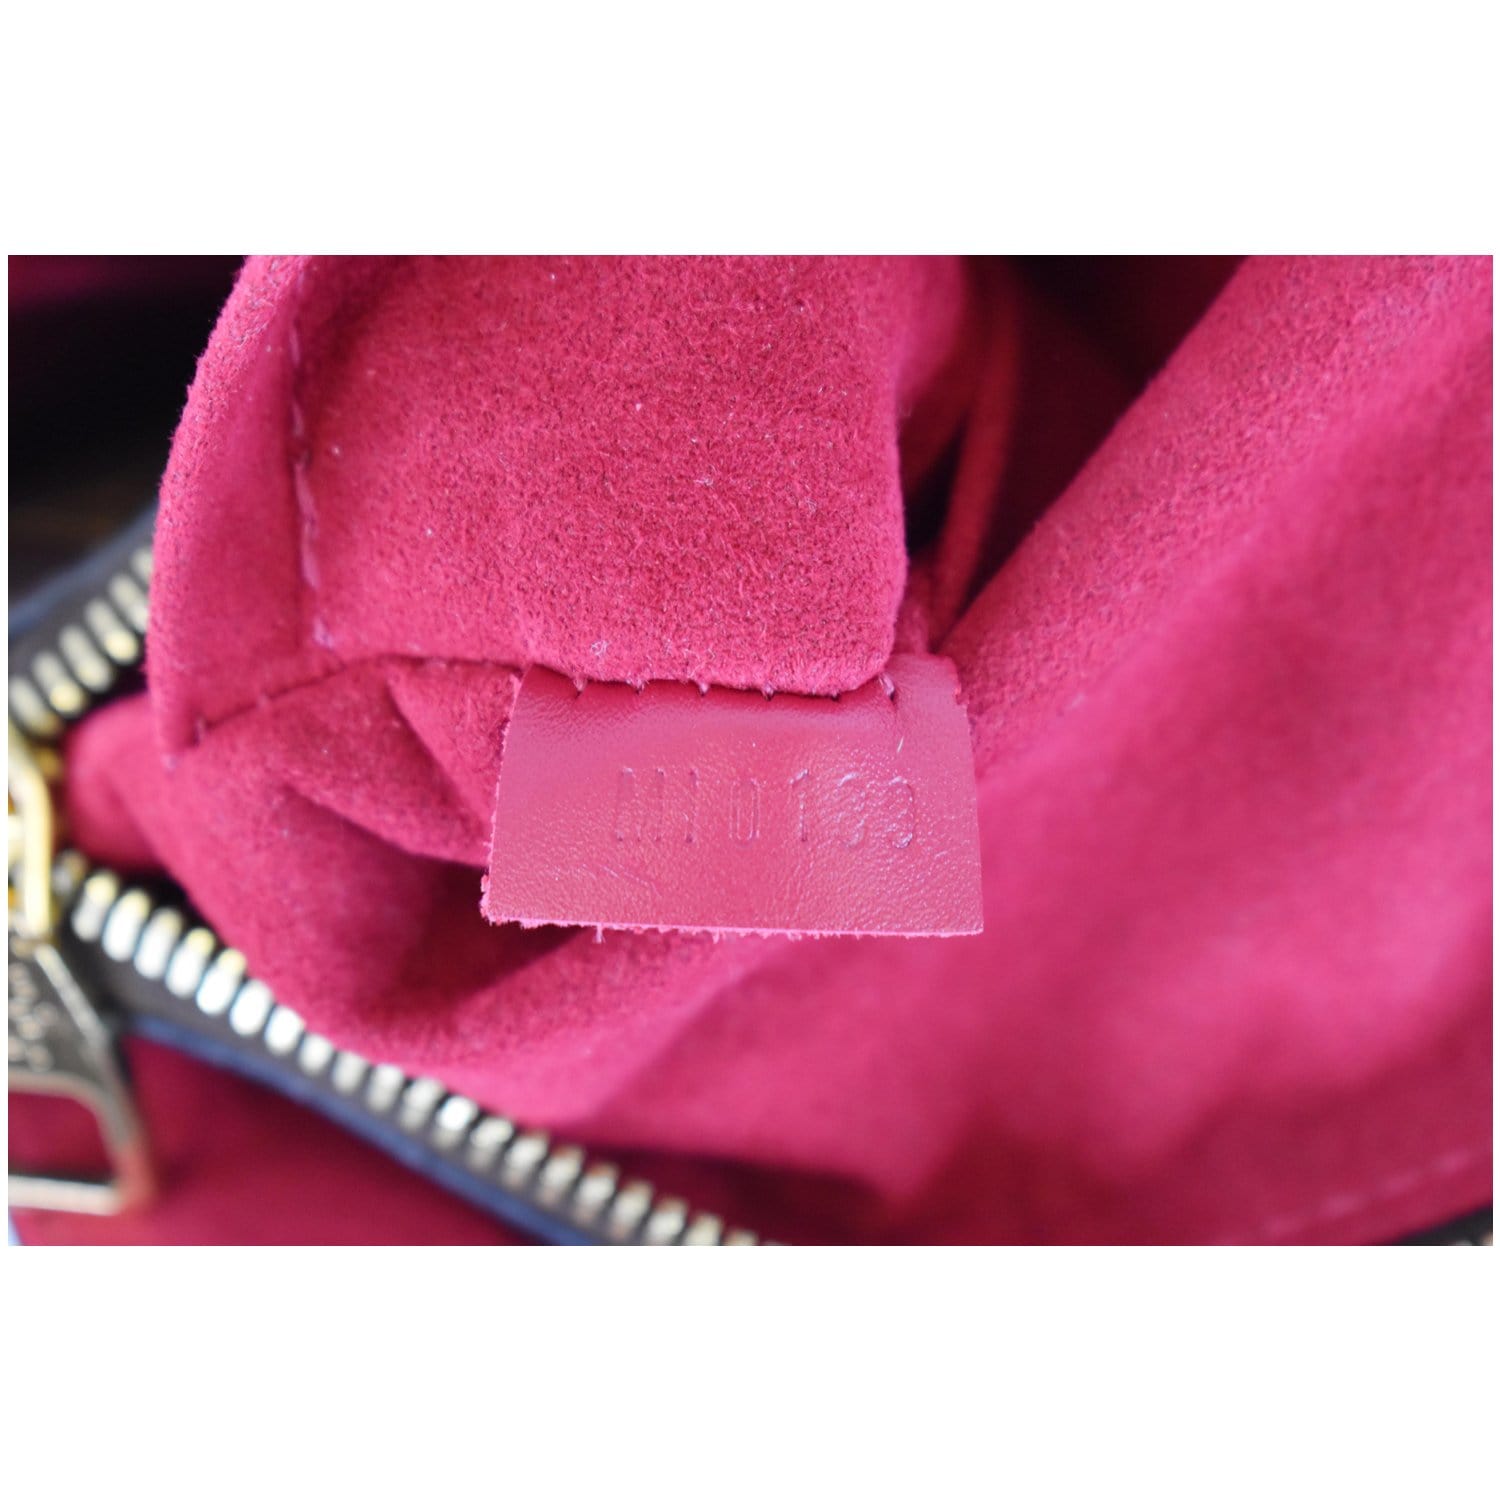 Florentine cloth mini bag Louis Vuitton Brown in Cloth - 34863382